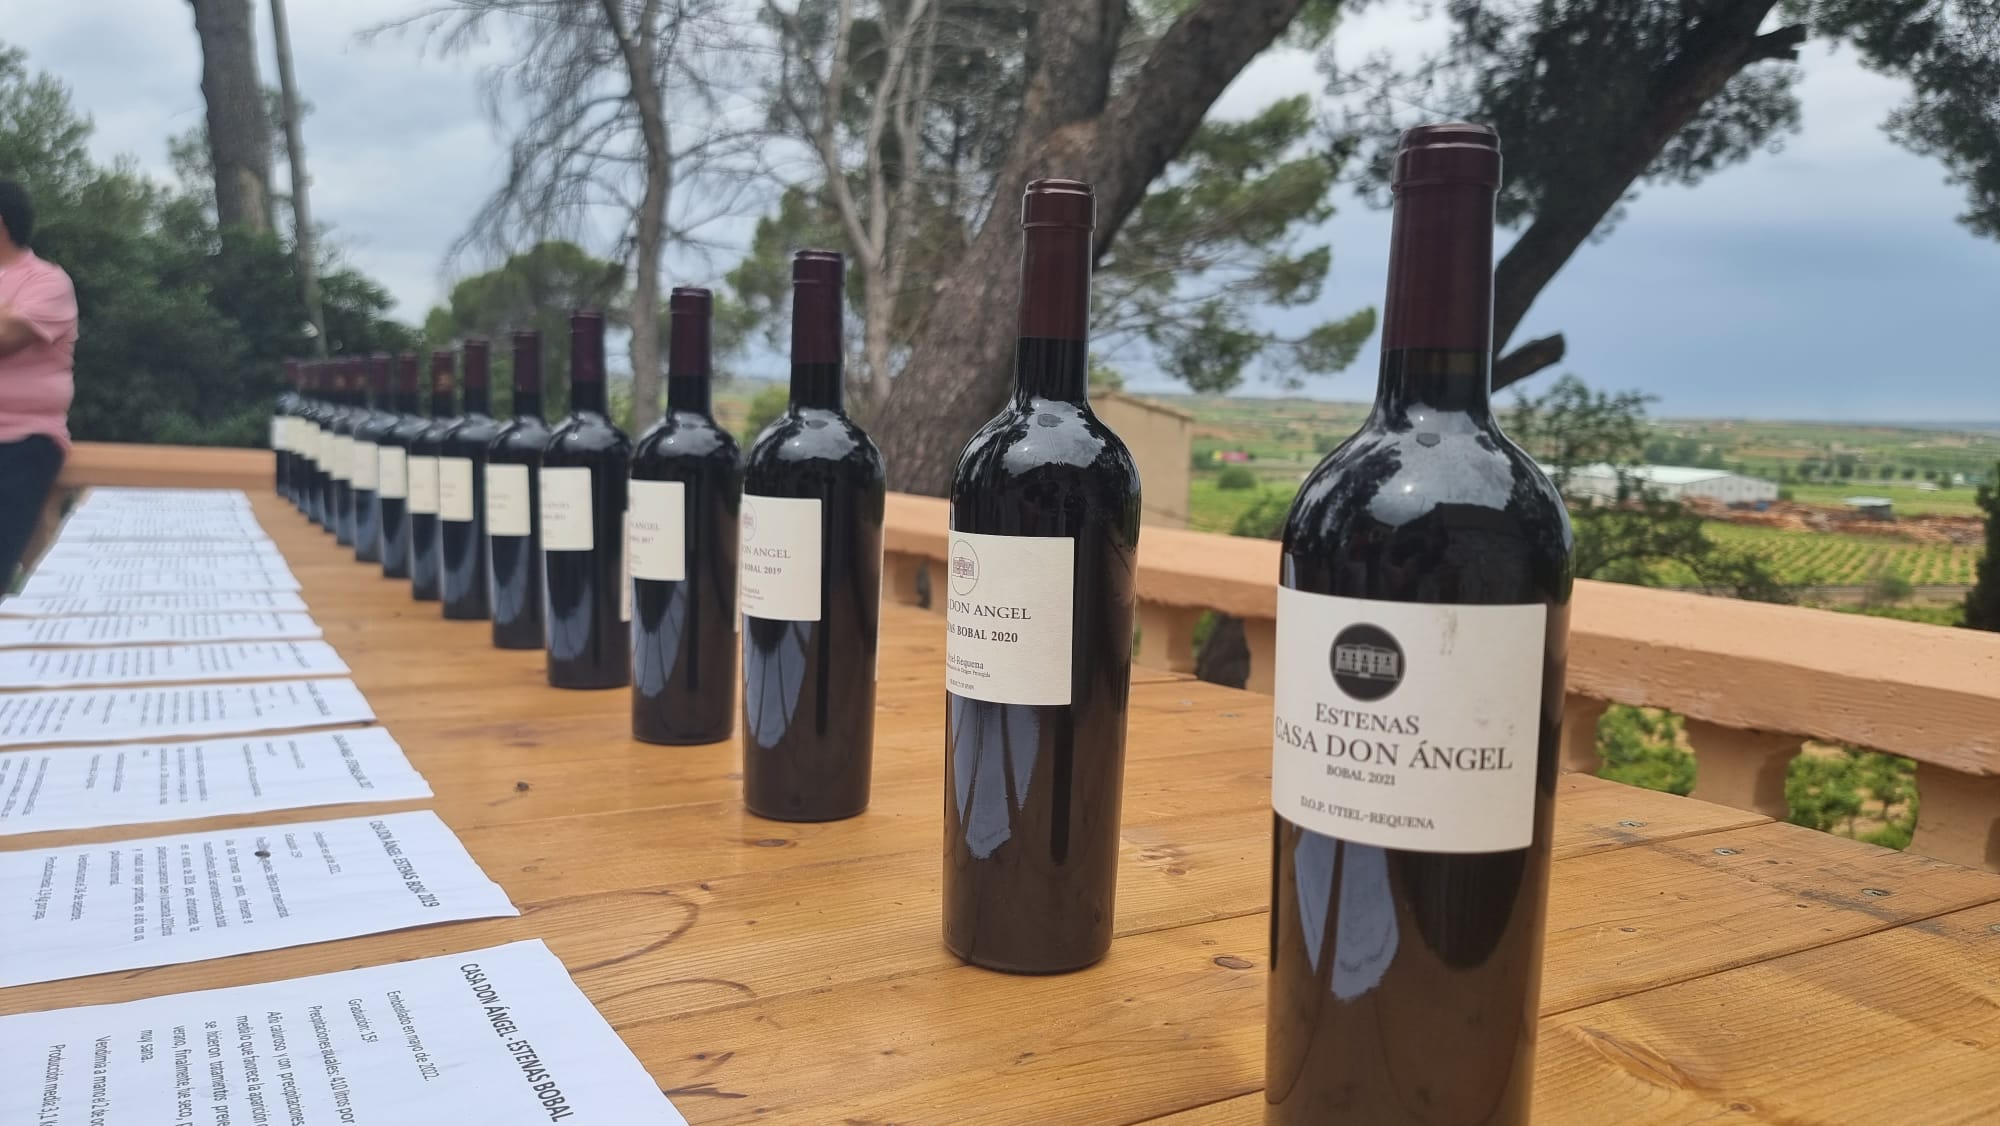 25 años de Casa Don Ángel, un referente pionero de los vinos de guarda de Bobal en la D.O. Utiel-Requena.